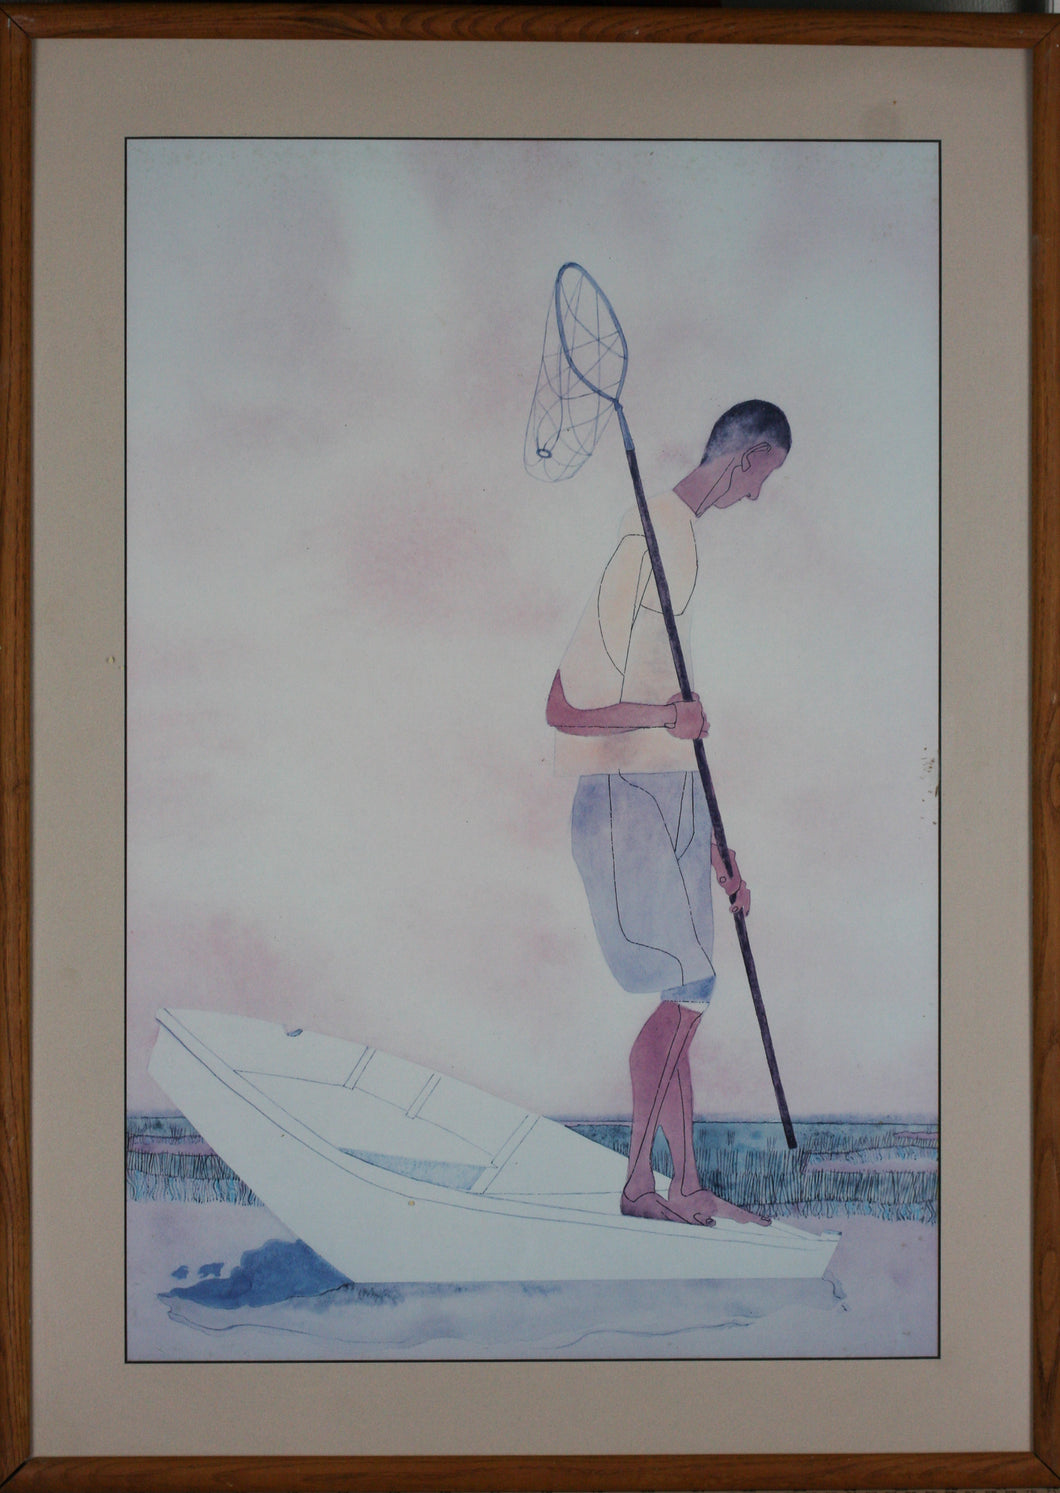 Robert Gwathmey. Soft Crabbing. Vintage Museum Exhibition Poster. 1984.